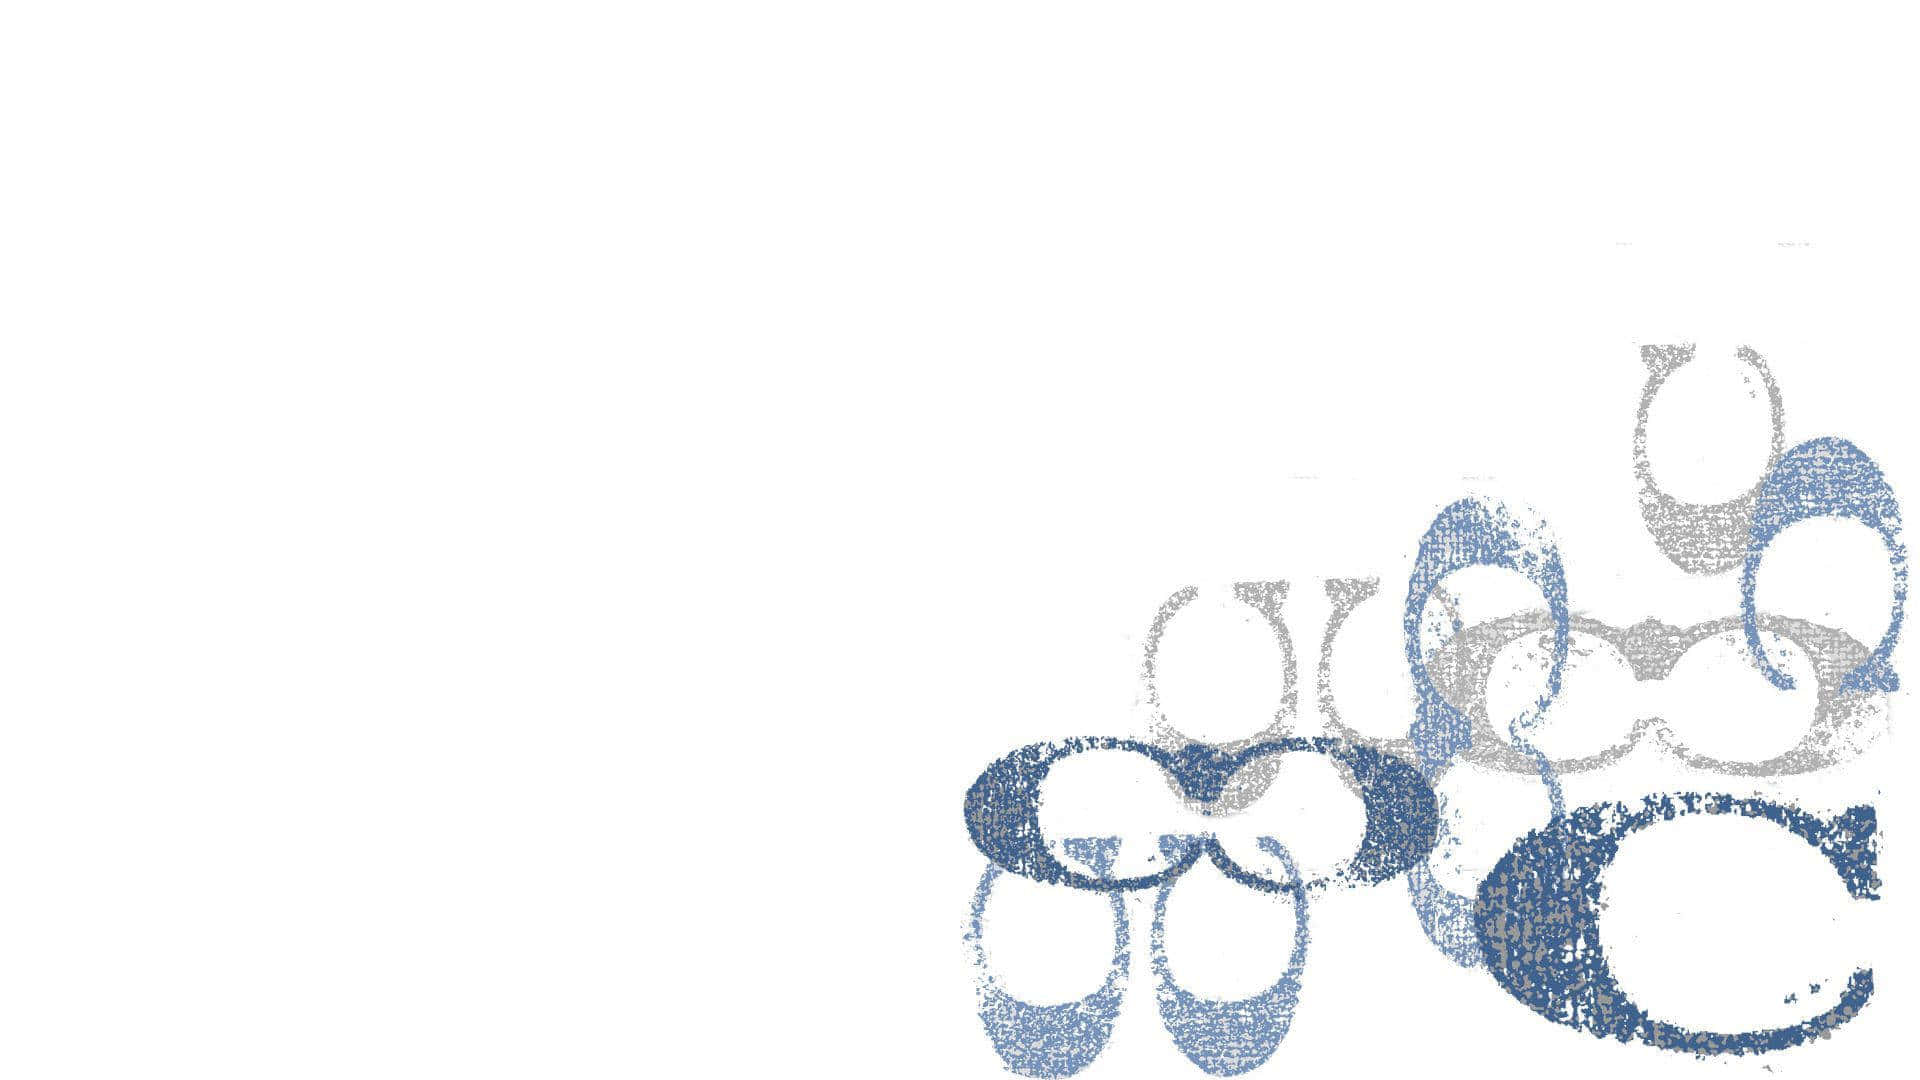 Einblaues Und Weißes Bild Von Einem Paar Schuhen